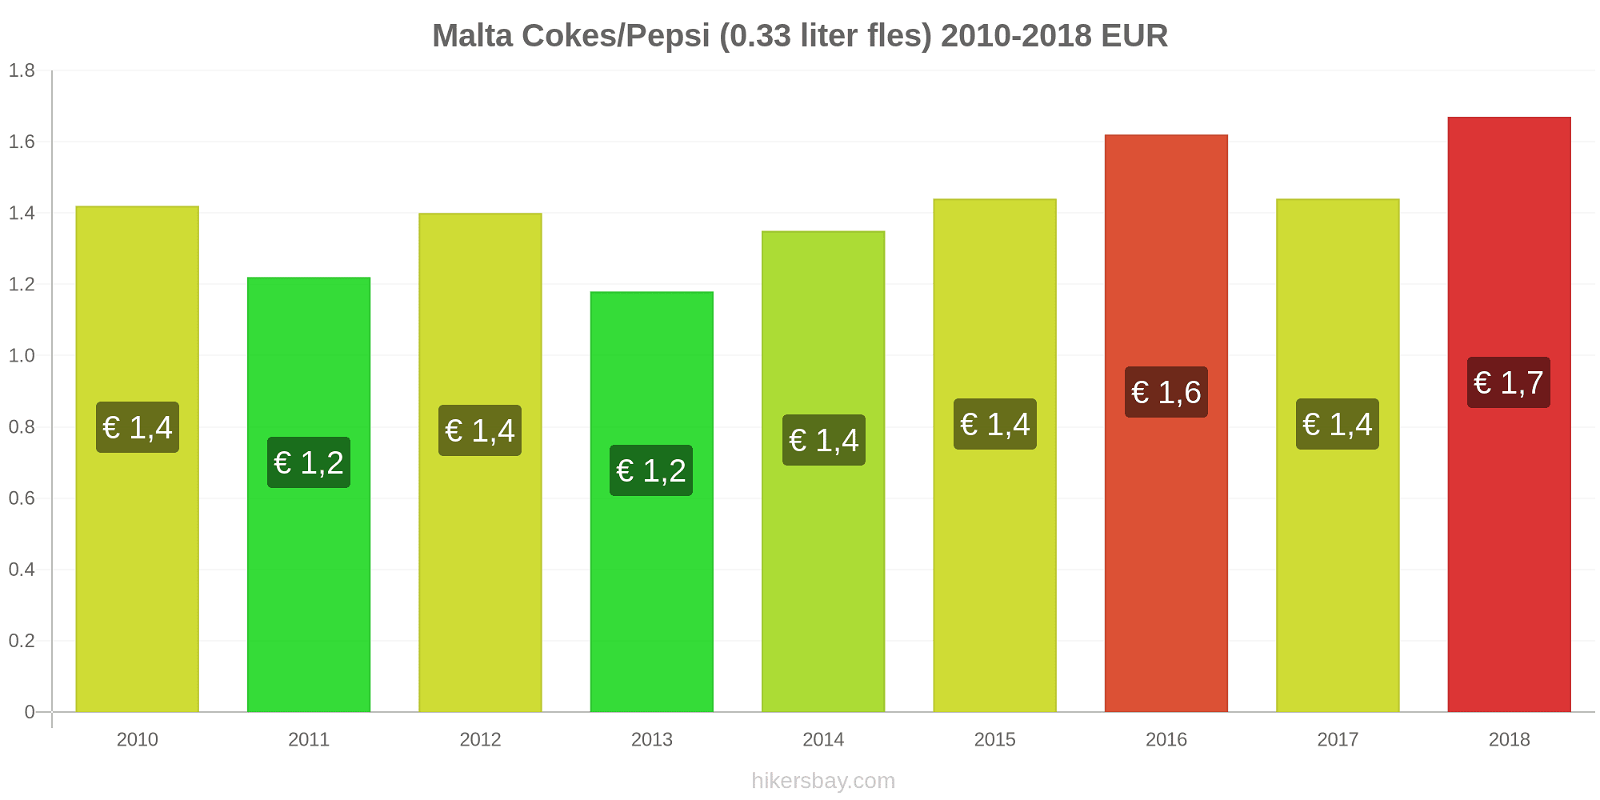 Malta prijswijzigingen Cokes/Pepsi (0,33 literfles) hikersbay.com